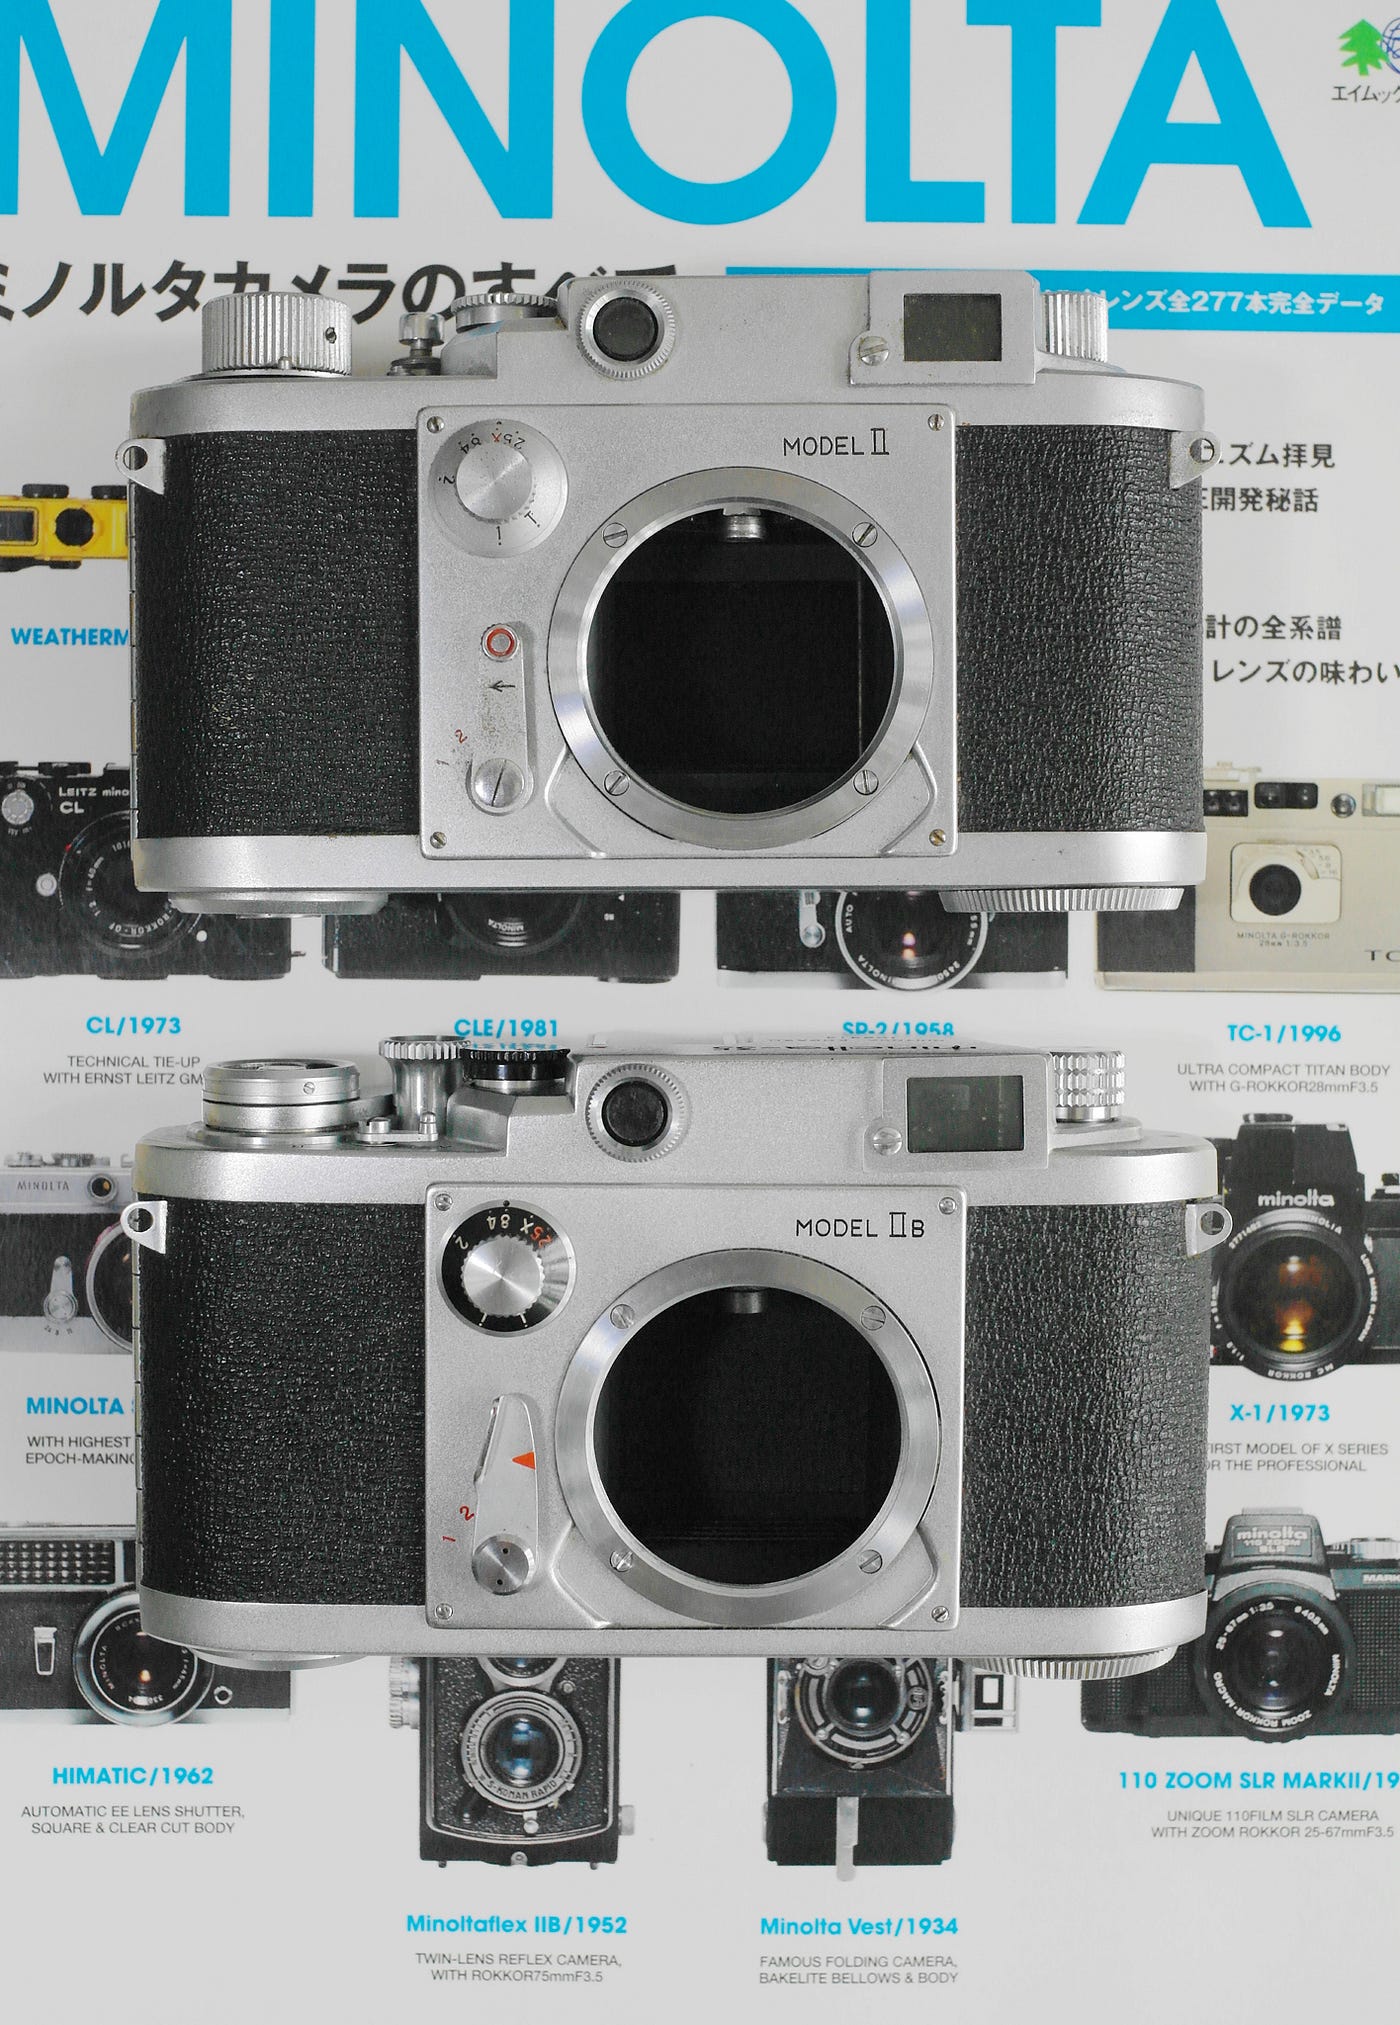 細說Minolta-35 IIB 千代田光學旁軸相機、Super rokkor 鏡頭| by LI